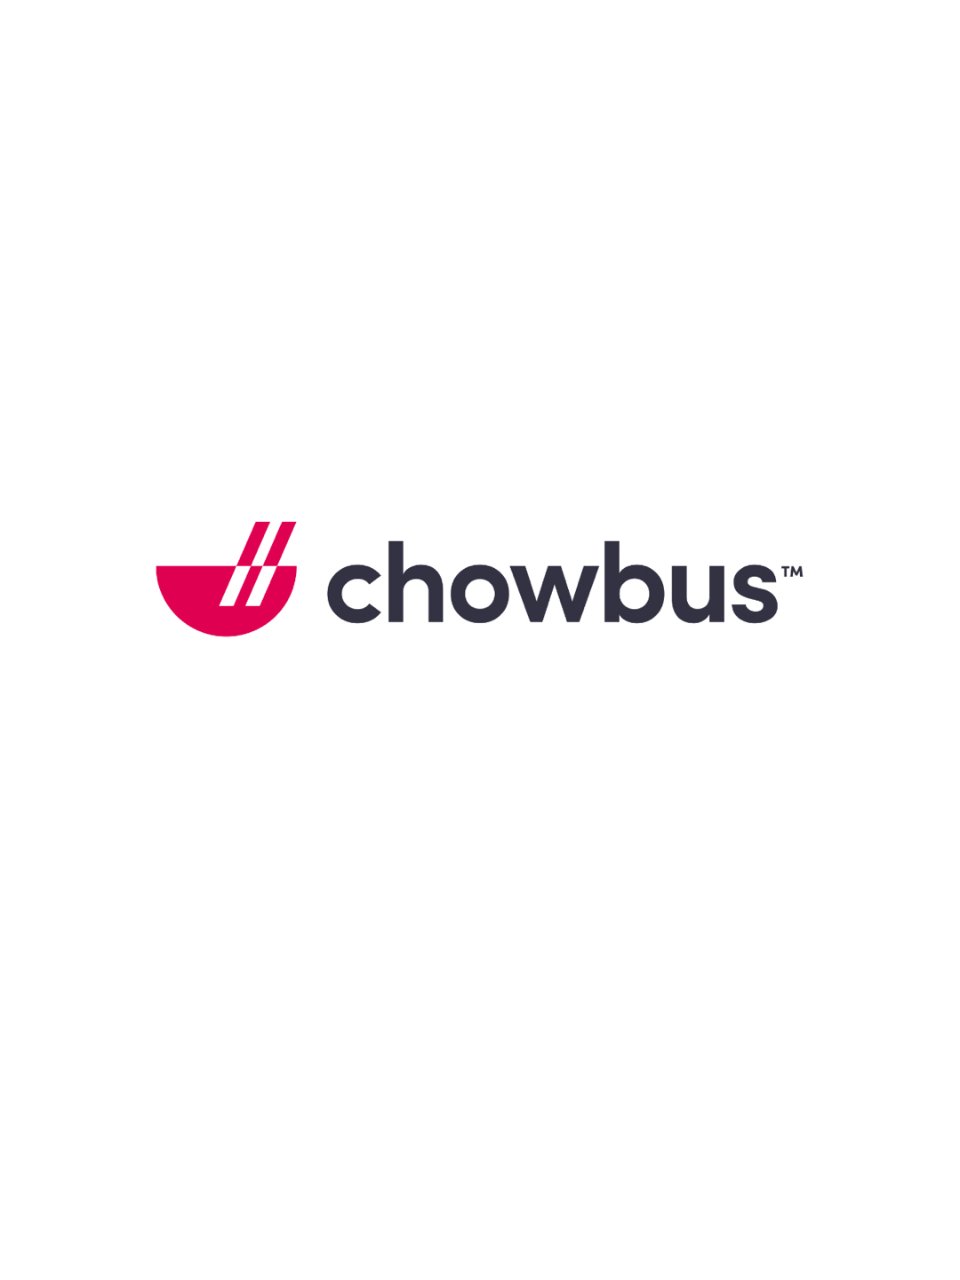 chowbus